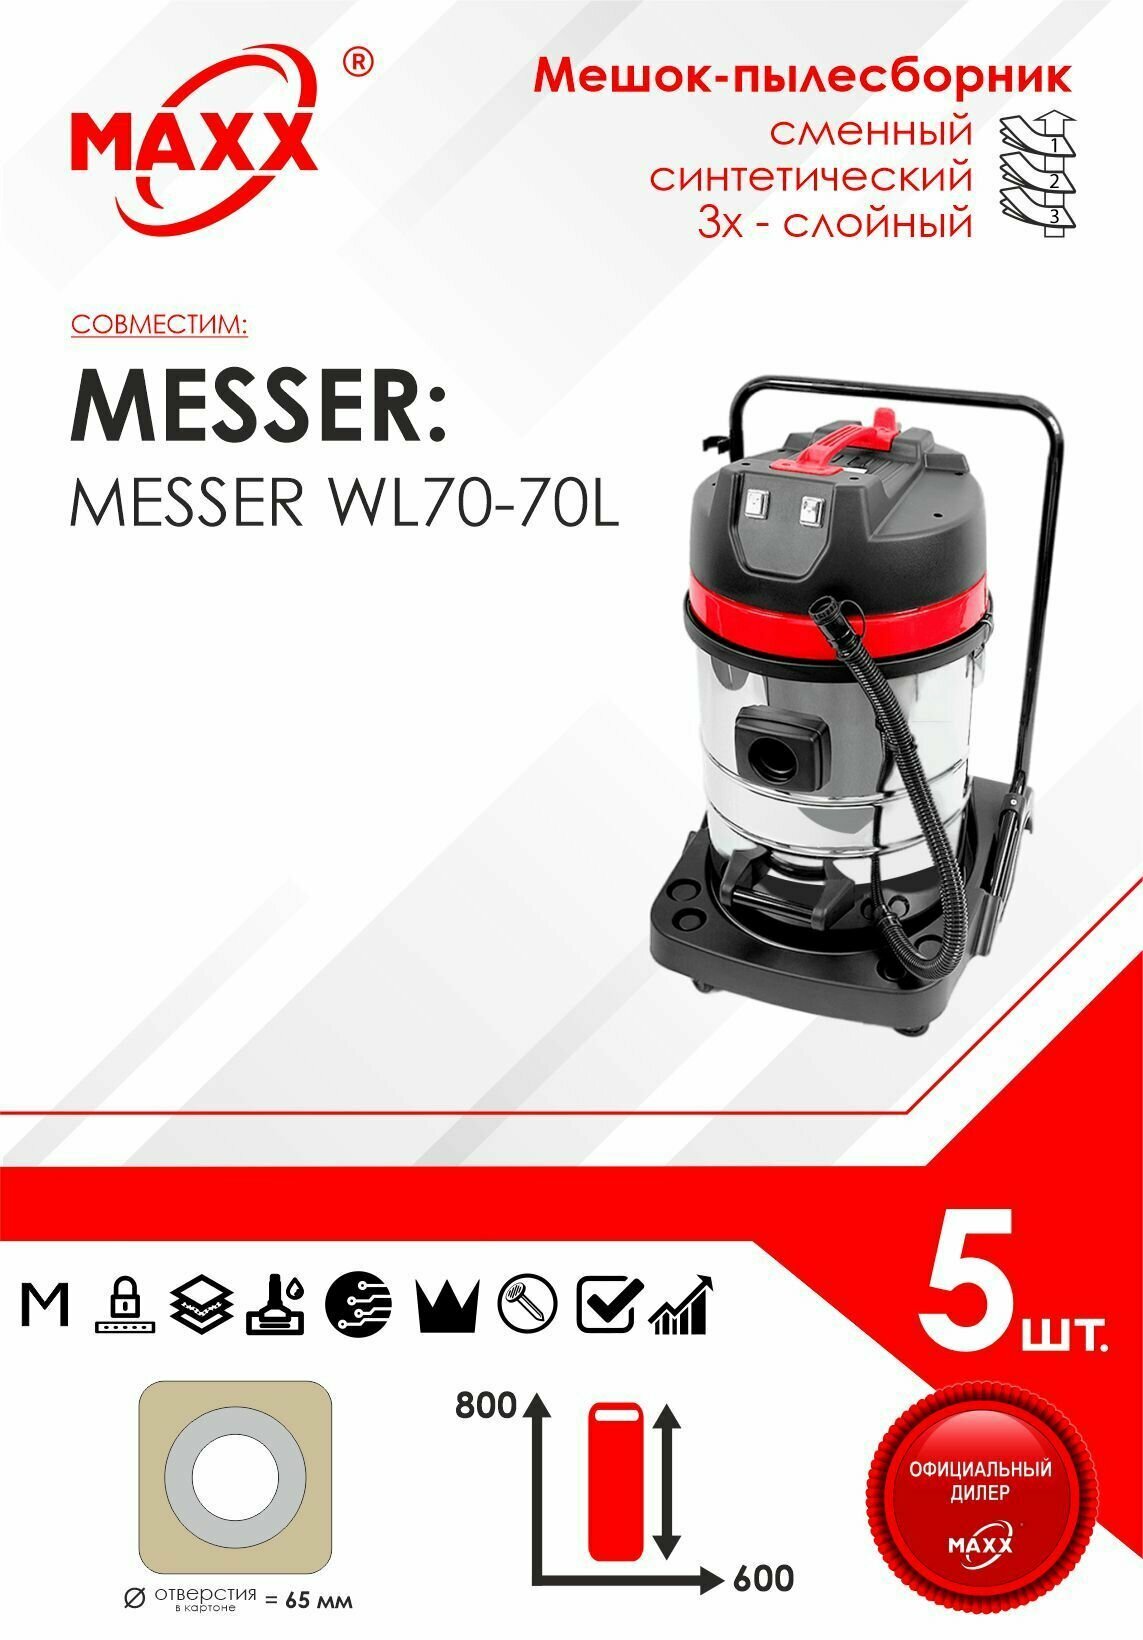 Мешок - пылесборник 5 шт. для пылесоса Messer WL70-70L